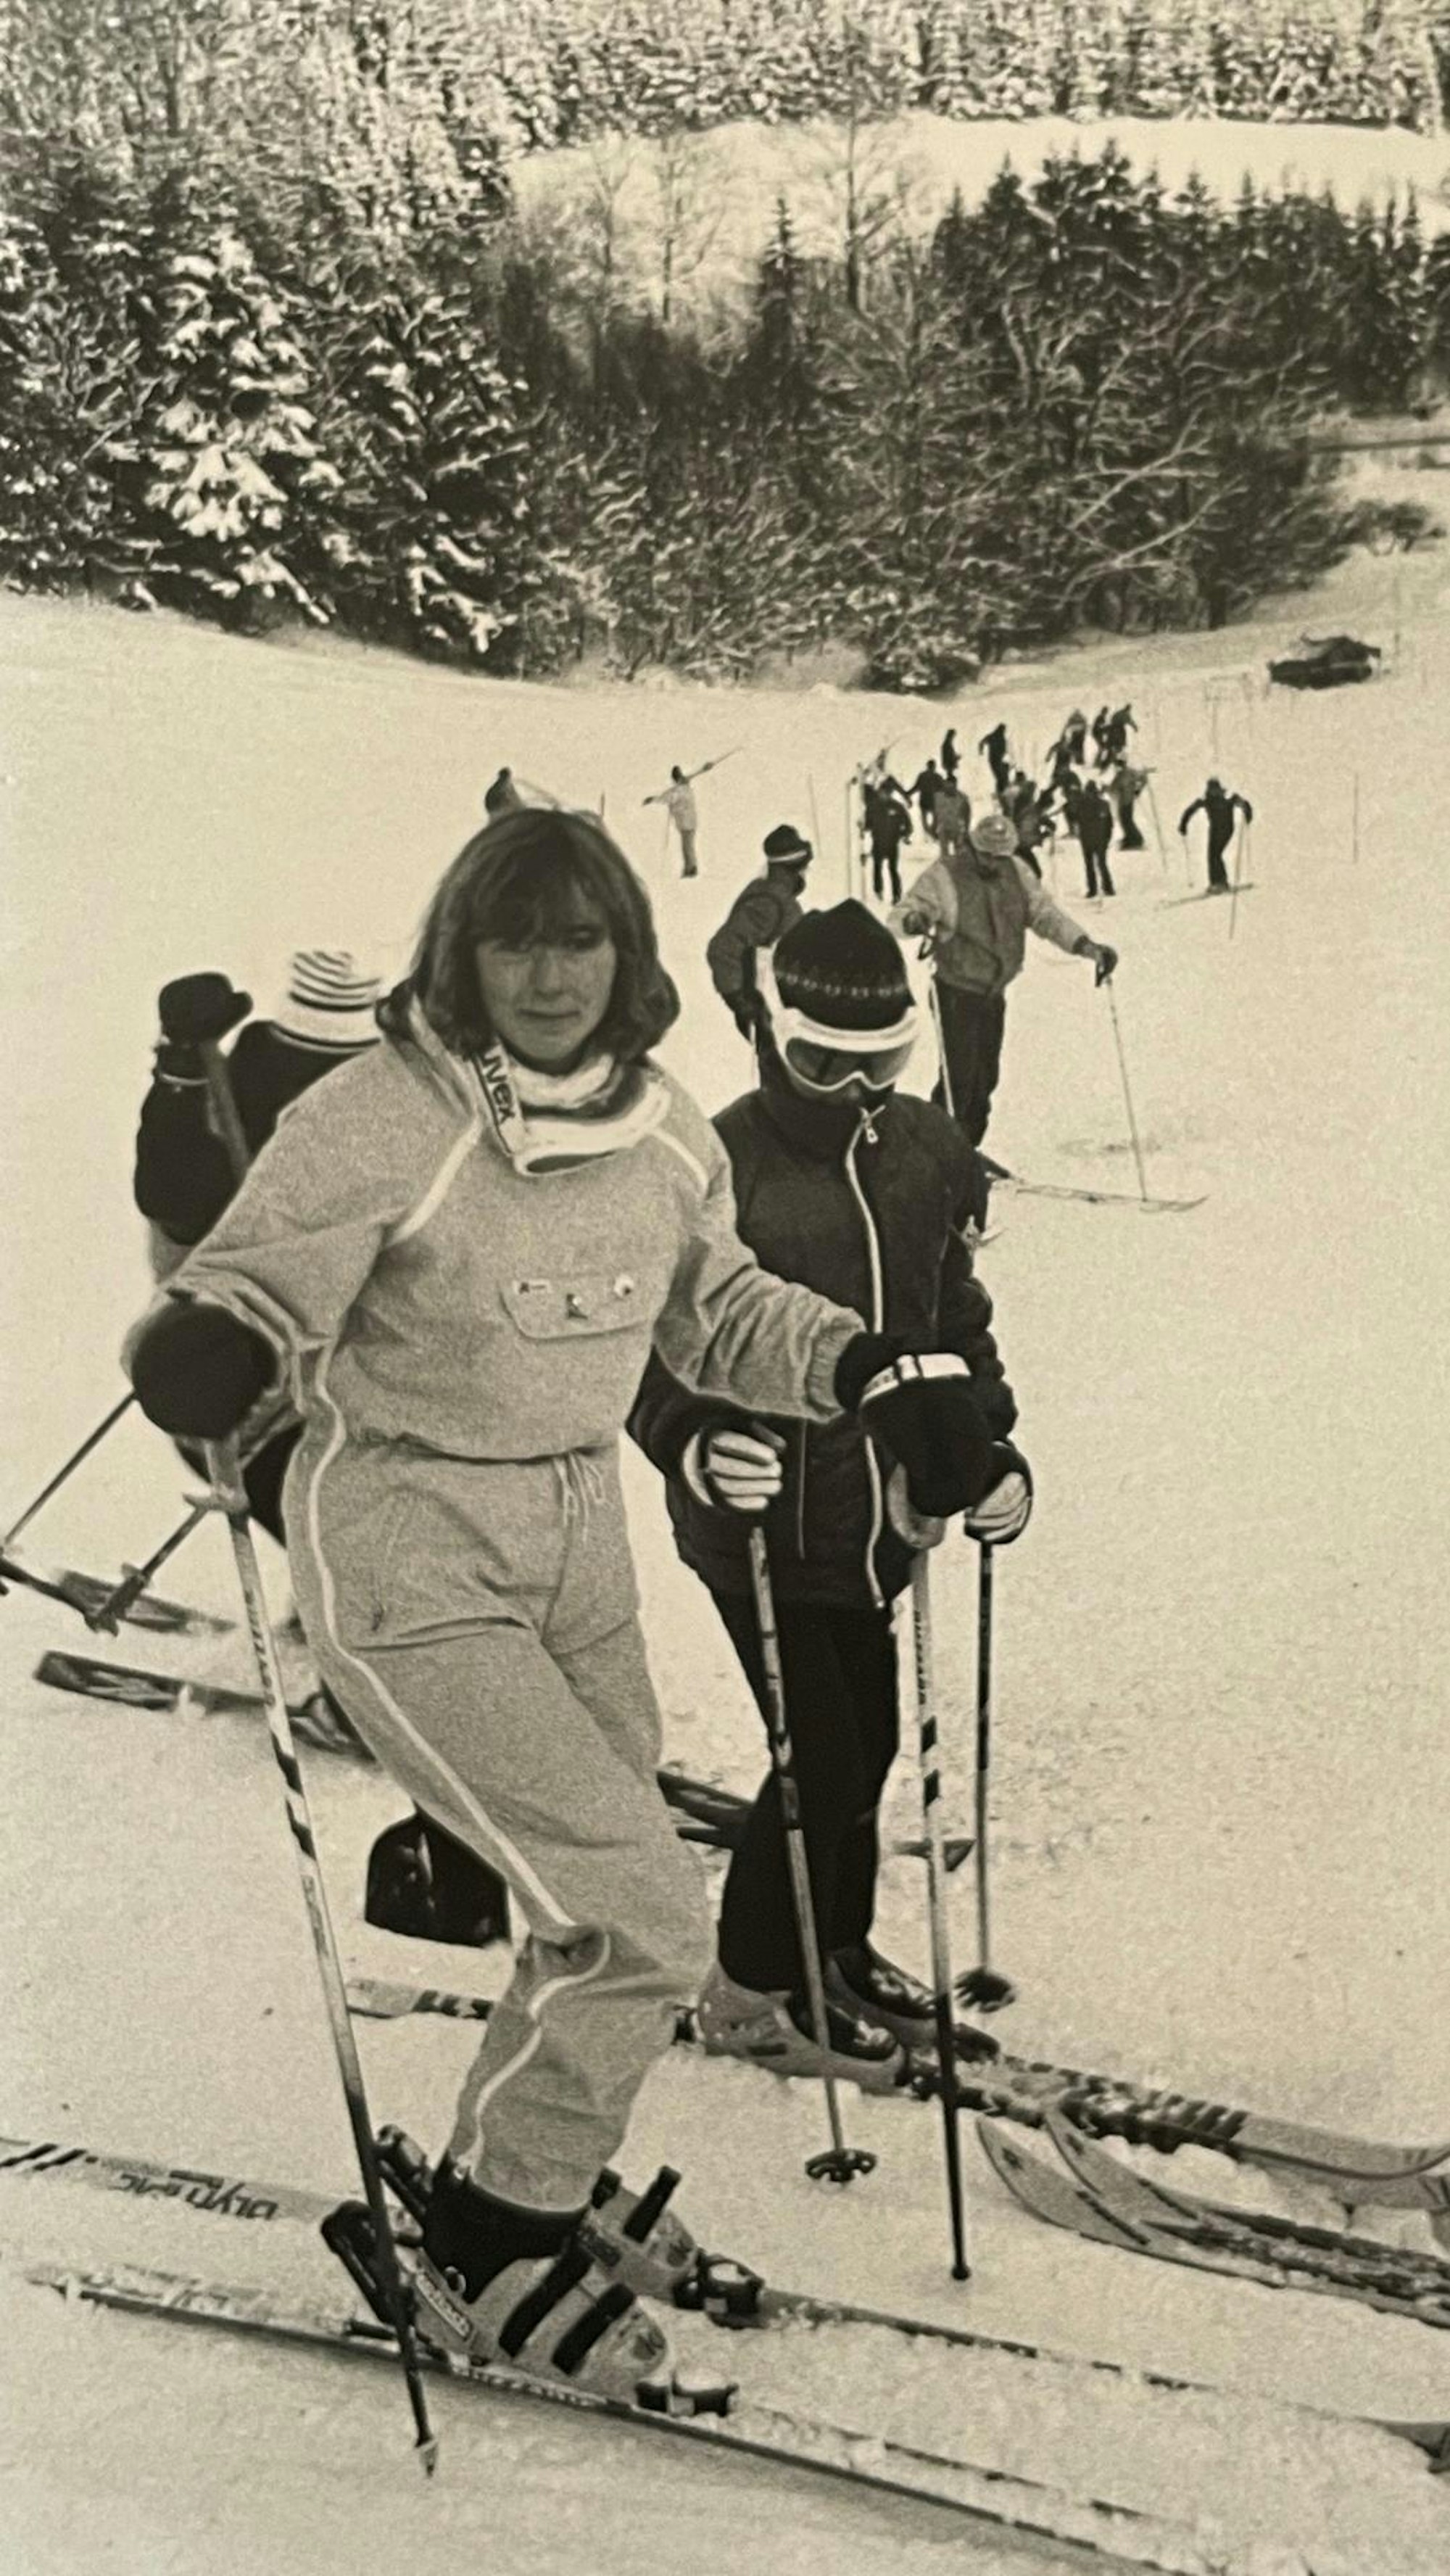 Karin Madel gehörte ab dem zehnten Lebensjahr gehörte sie dem Kader des Westdeutschen Skiverbandes NRW an und blickt heute auf zahlreiche besondere Begegnungen im Skisport zurück.